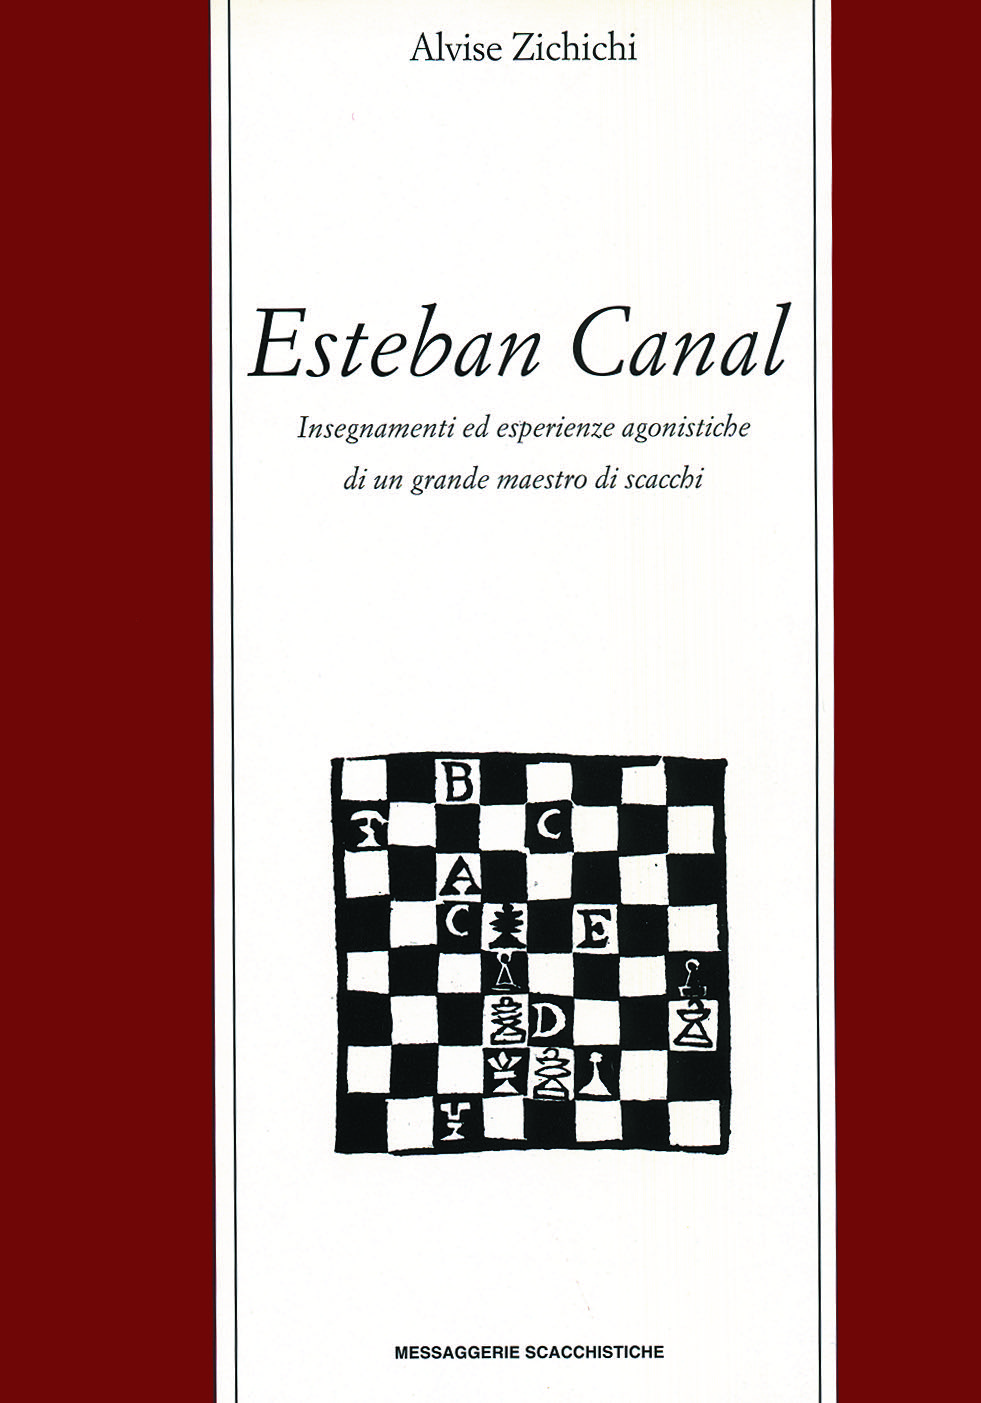 Esteban Canal - insegnamenti ed esperienze agonistiche di un grande maestro di scacchi